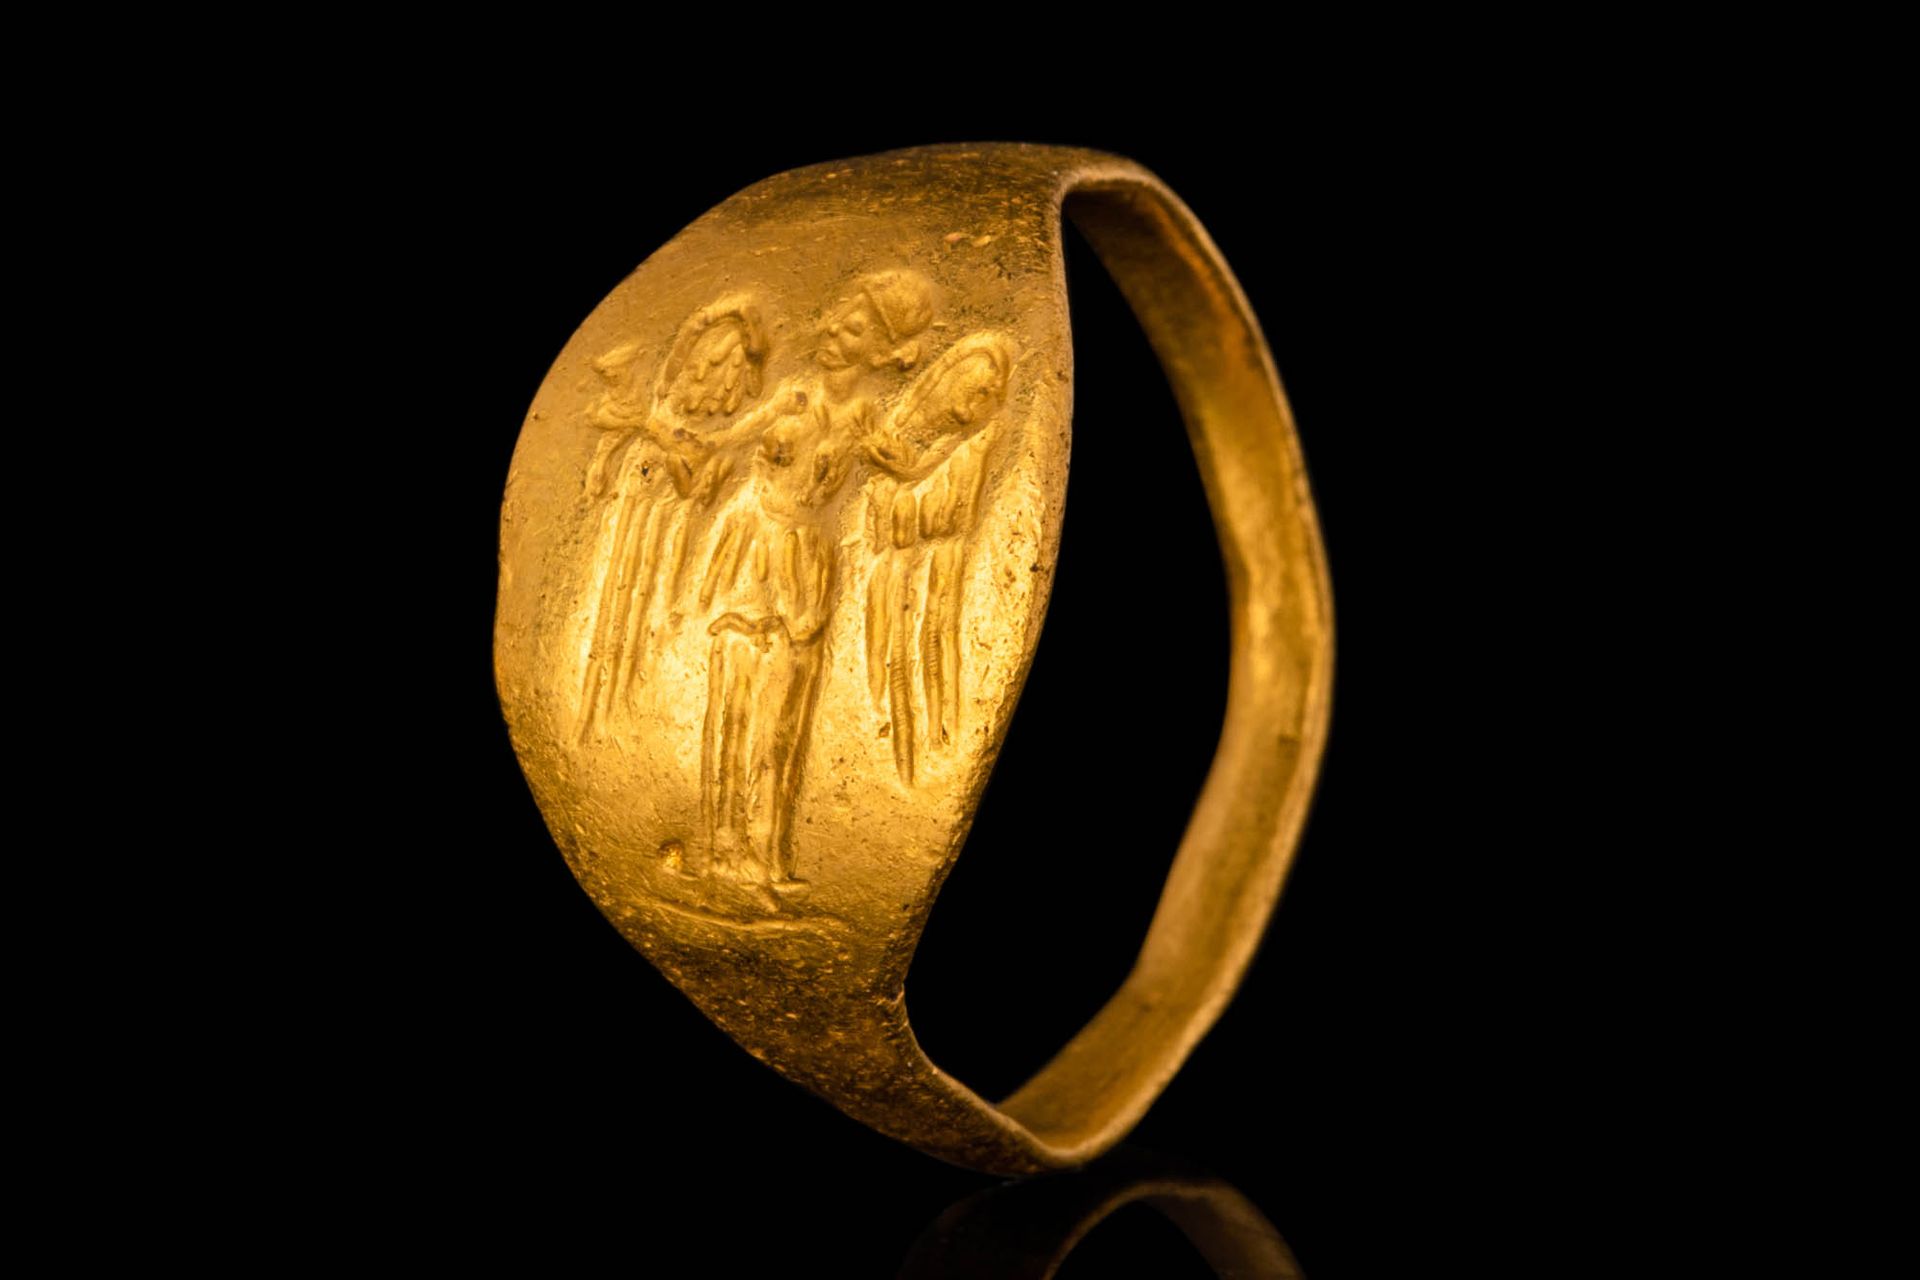 GREEK HELLENISTIC GOLD RING WITH NIKE Ca. 300 - 100 BC.
Superbe bague en or grec&hellip;